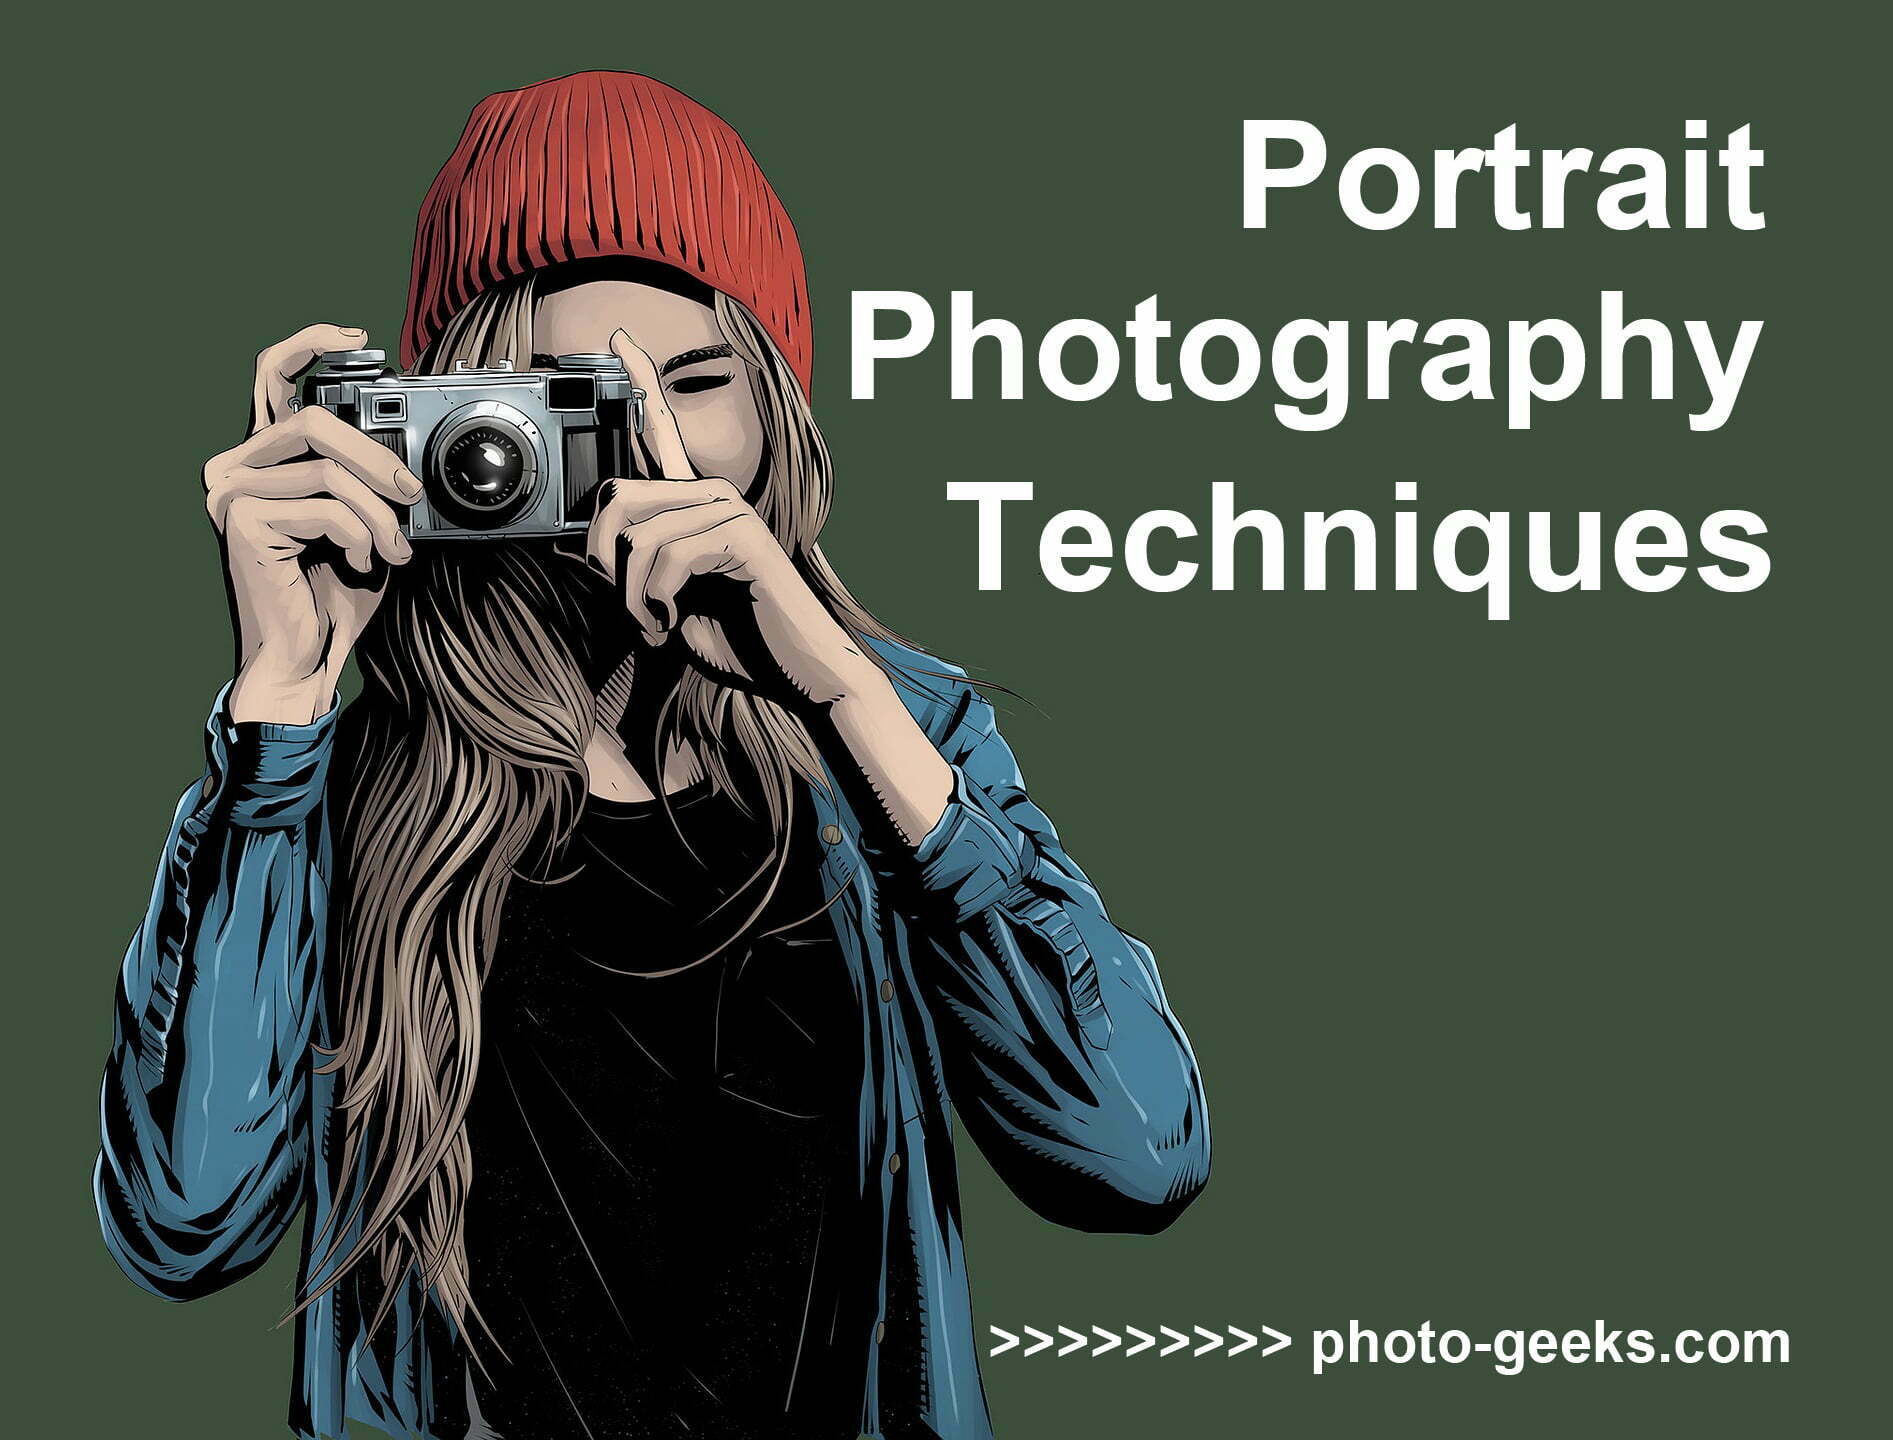 portrait photography techniques main cover